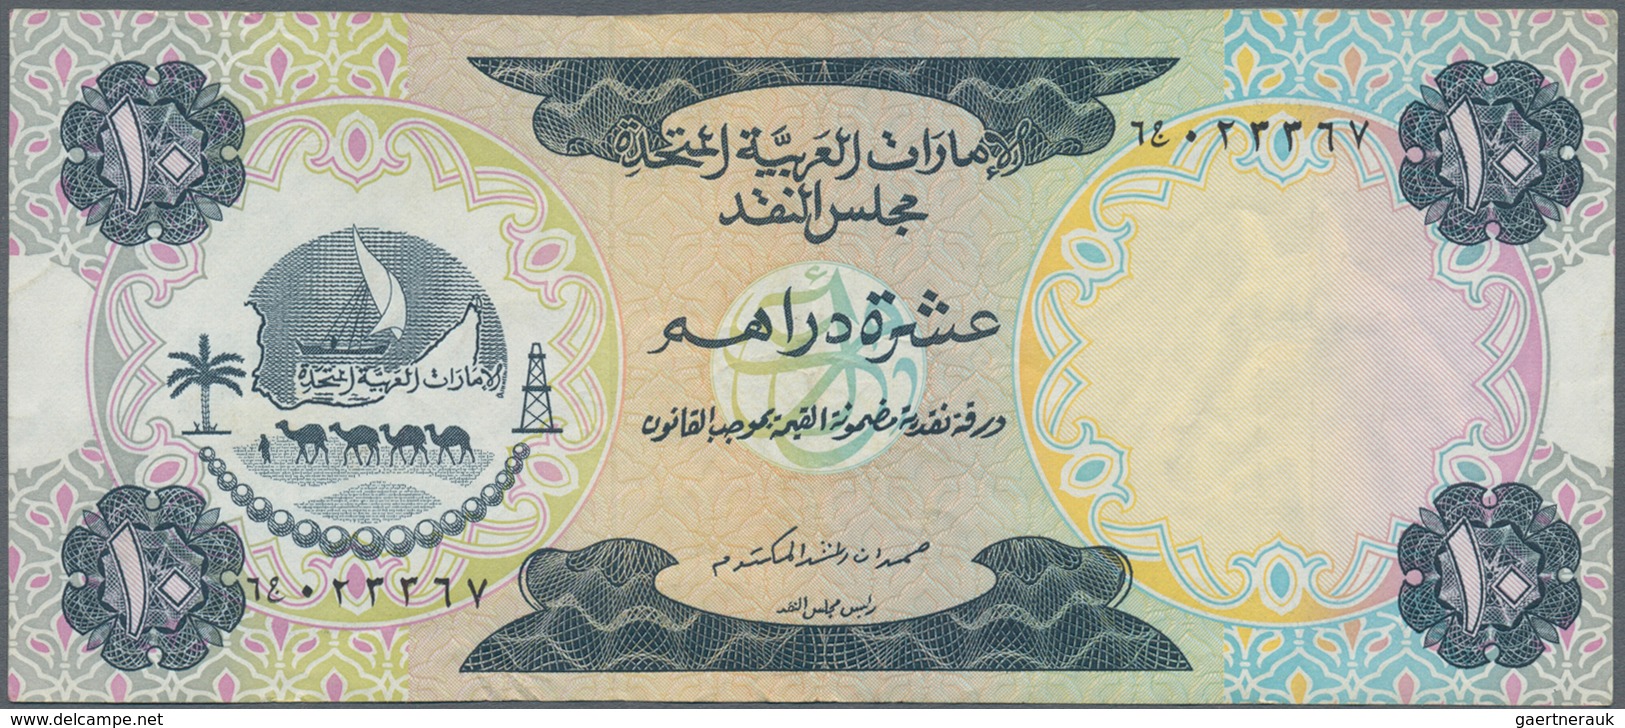 02572 United Arab Emirates / Vereinigte Arabische Emirate: Set Of 2 Banknotes 5 And 10 Dirhams ND(1973) P. - Verenigde Arabische Emiraten